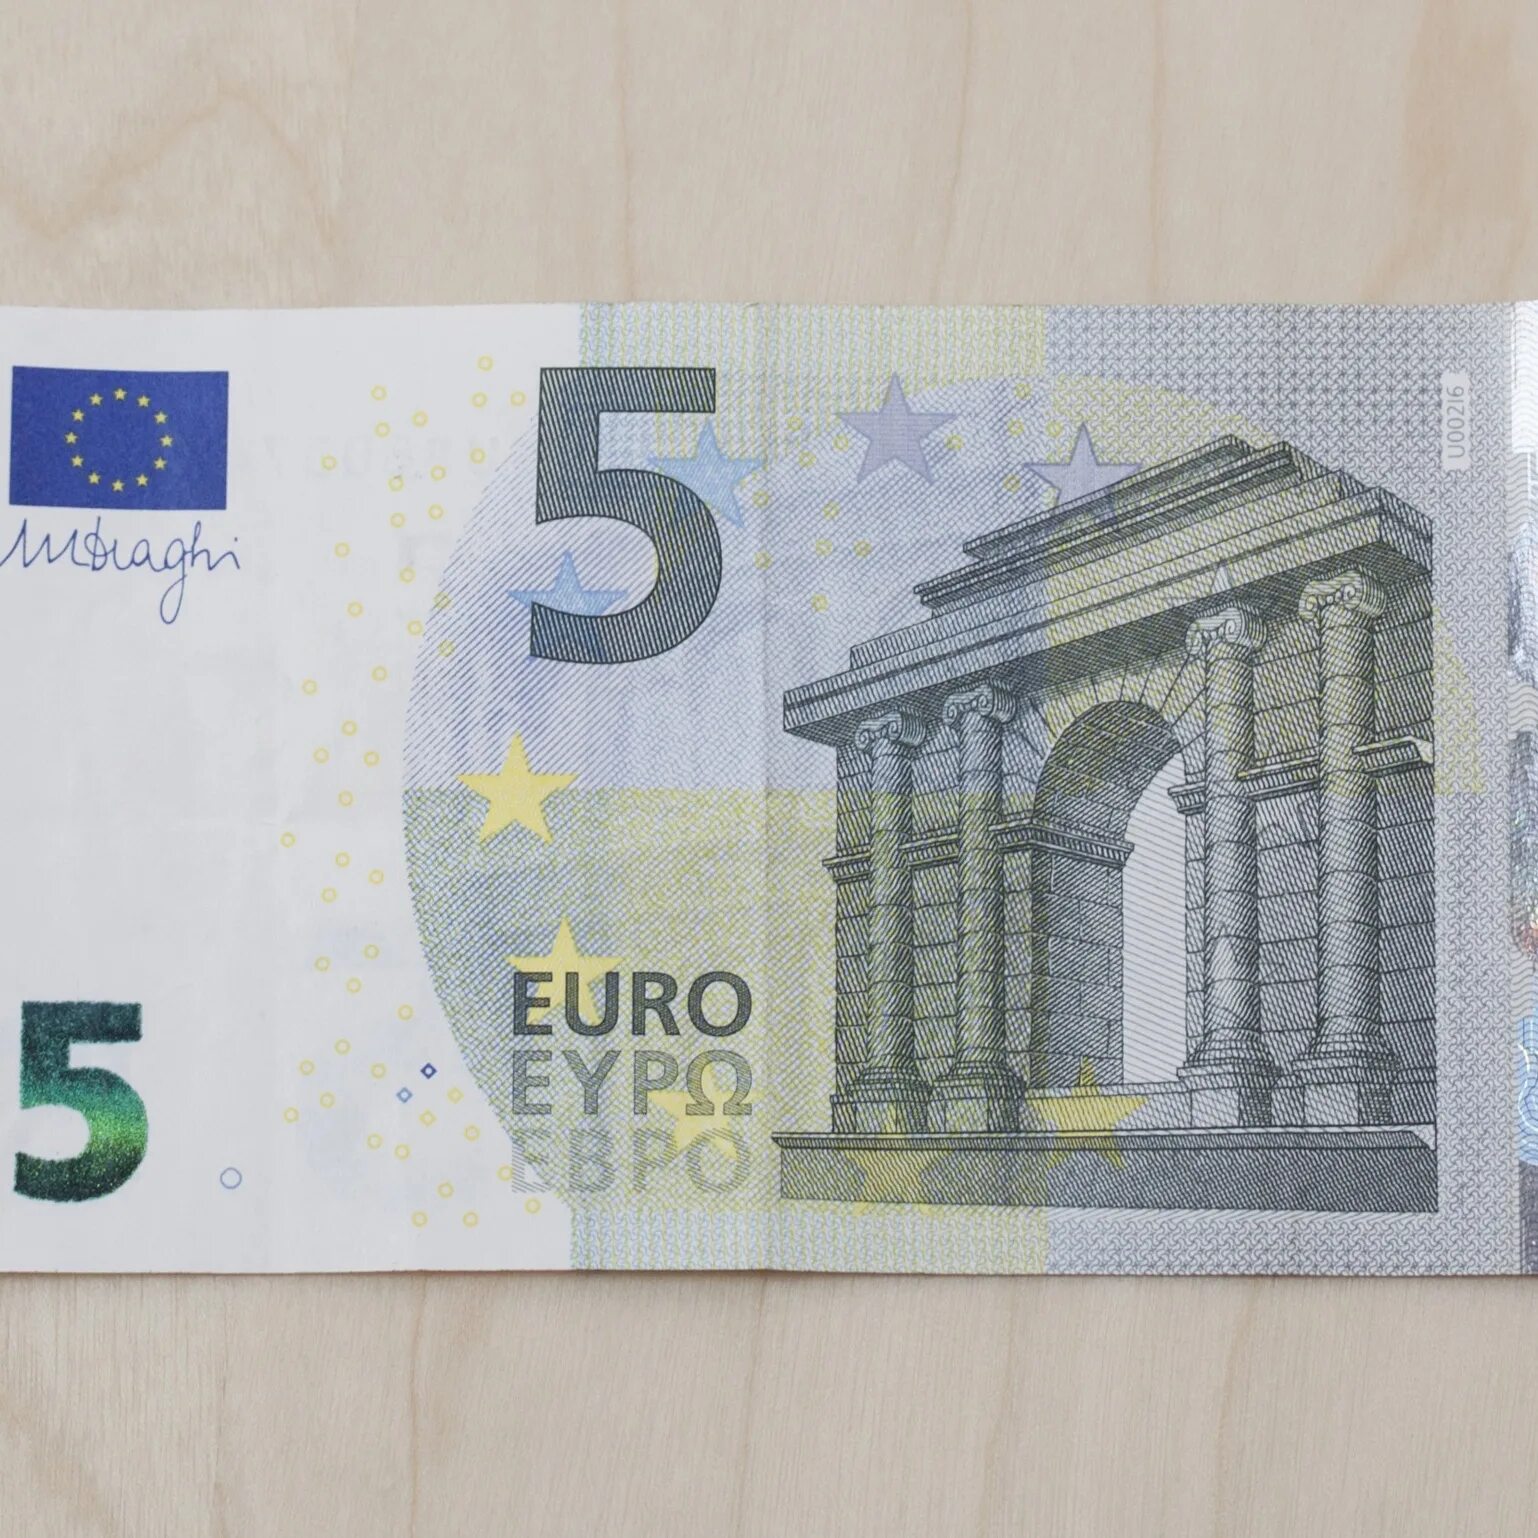 5 Евро купюра. Купюра 5 евро новая. 10 Евро купюра. 10 Евро банкноты евро. Купюра 5 евро